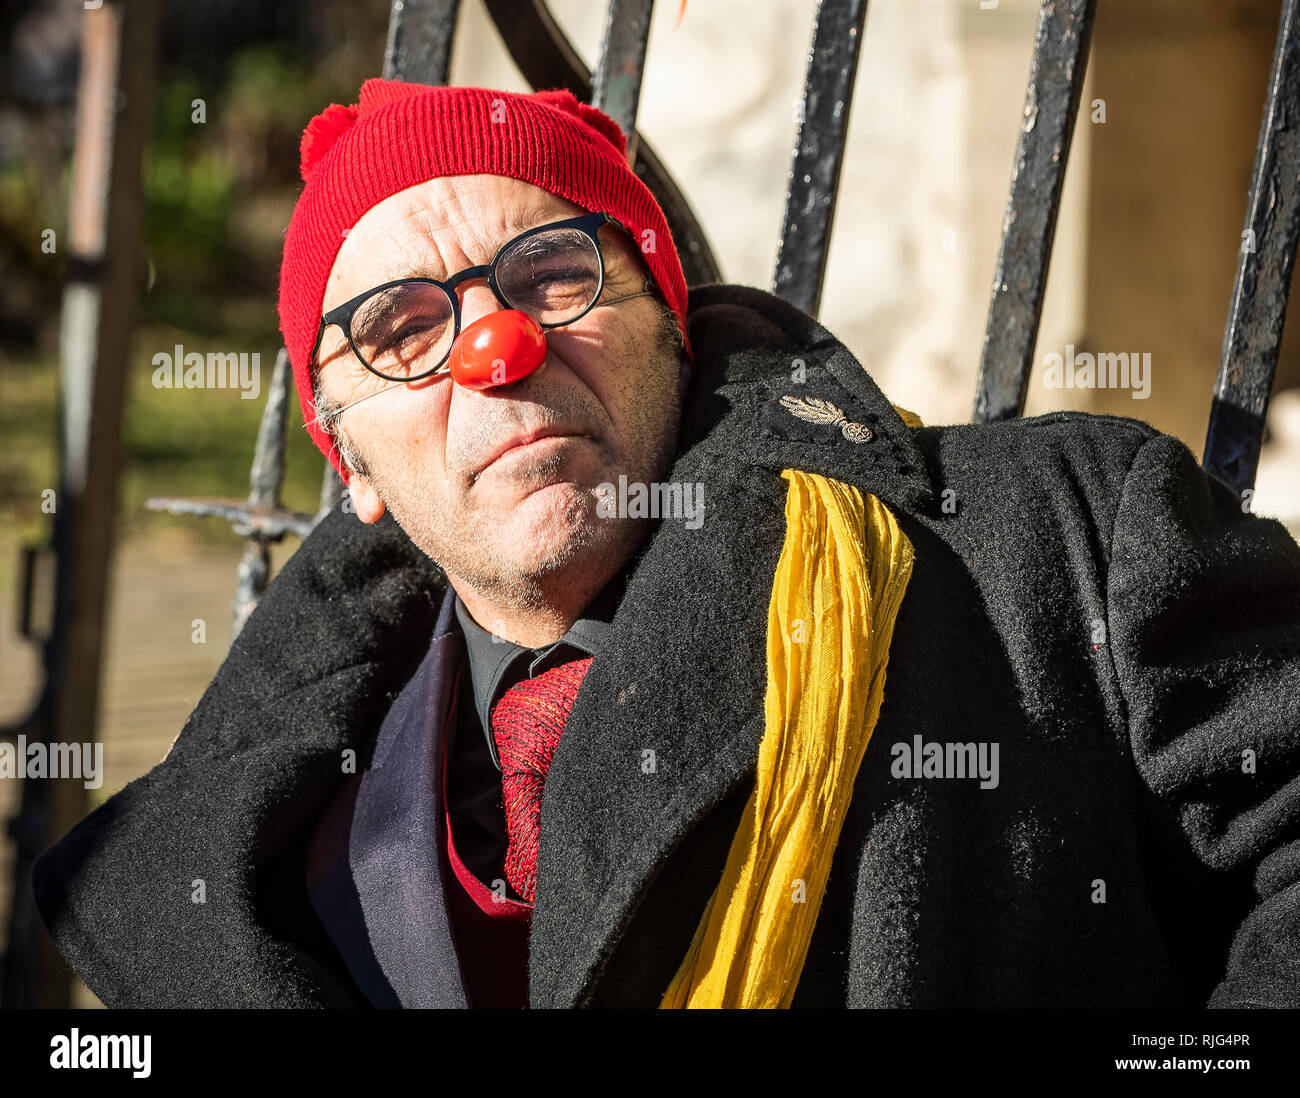 Nez rouge de clown avec verres et rouge bobble hat Banque D'Images